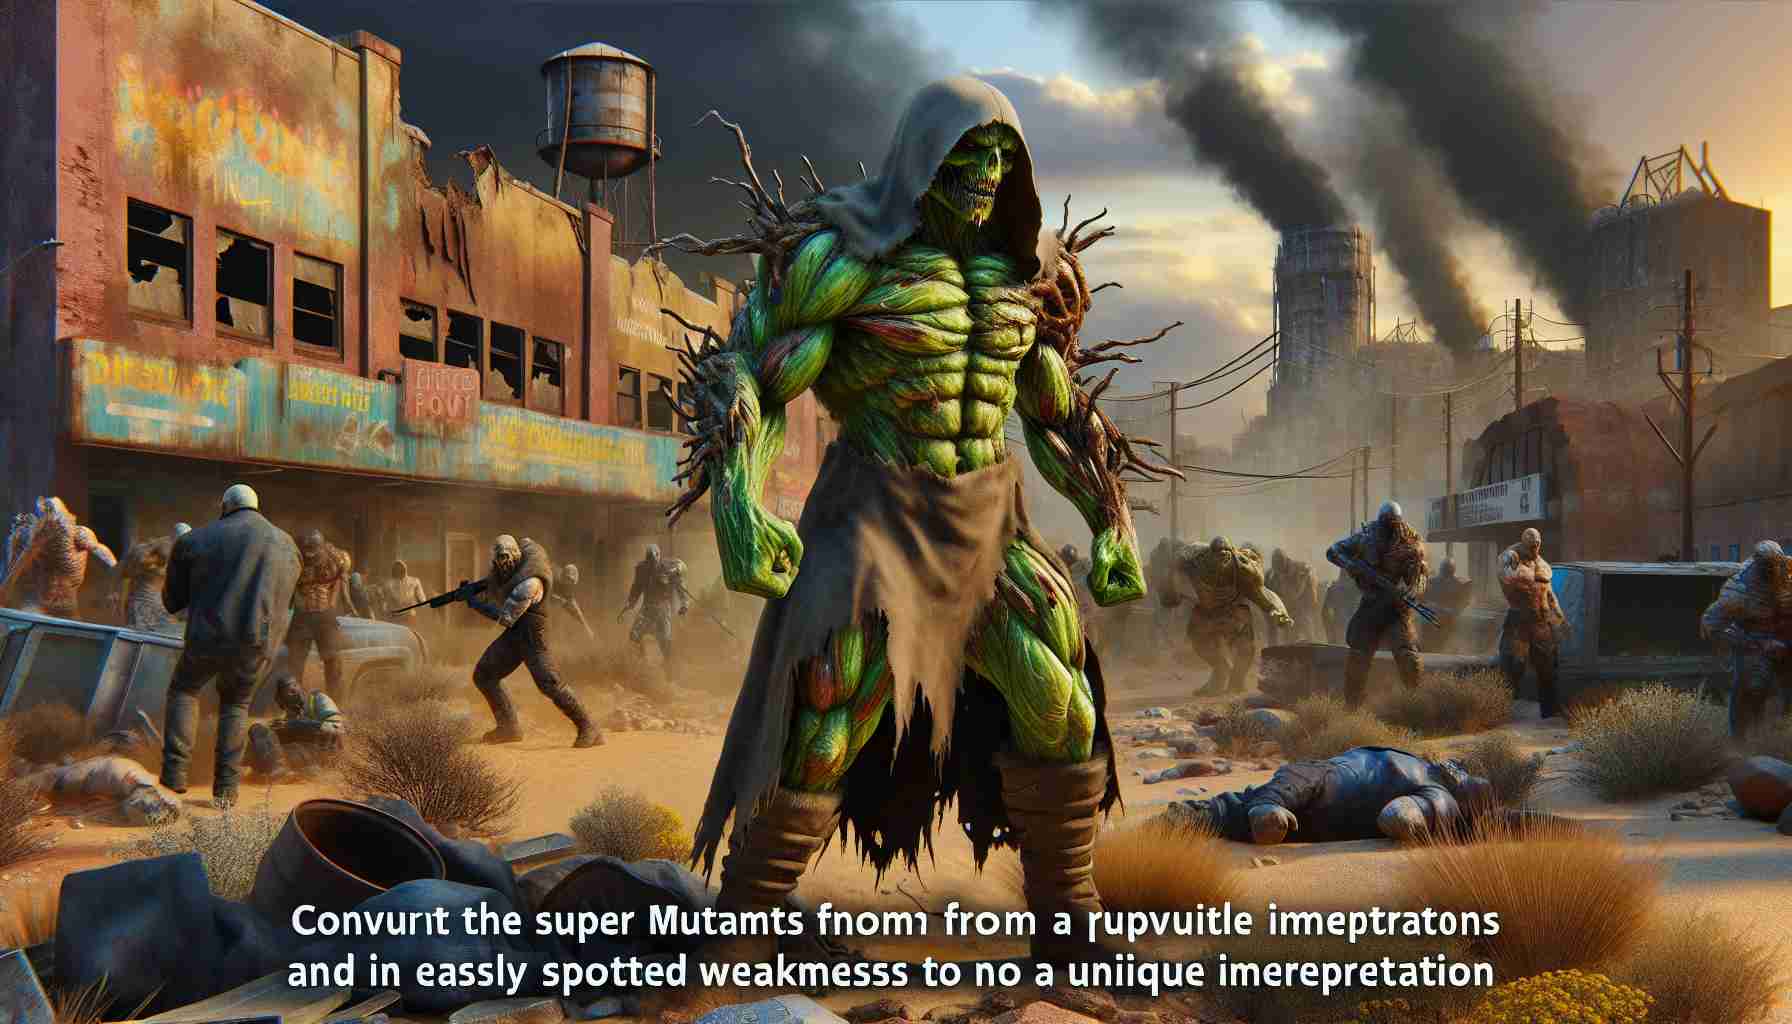 Comment trouver et éliminer les super mutants dans Fallout 4 facilement